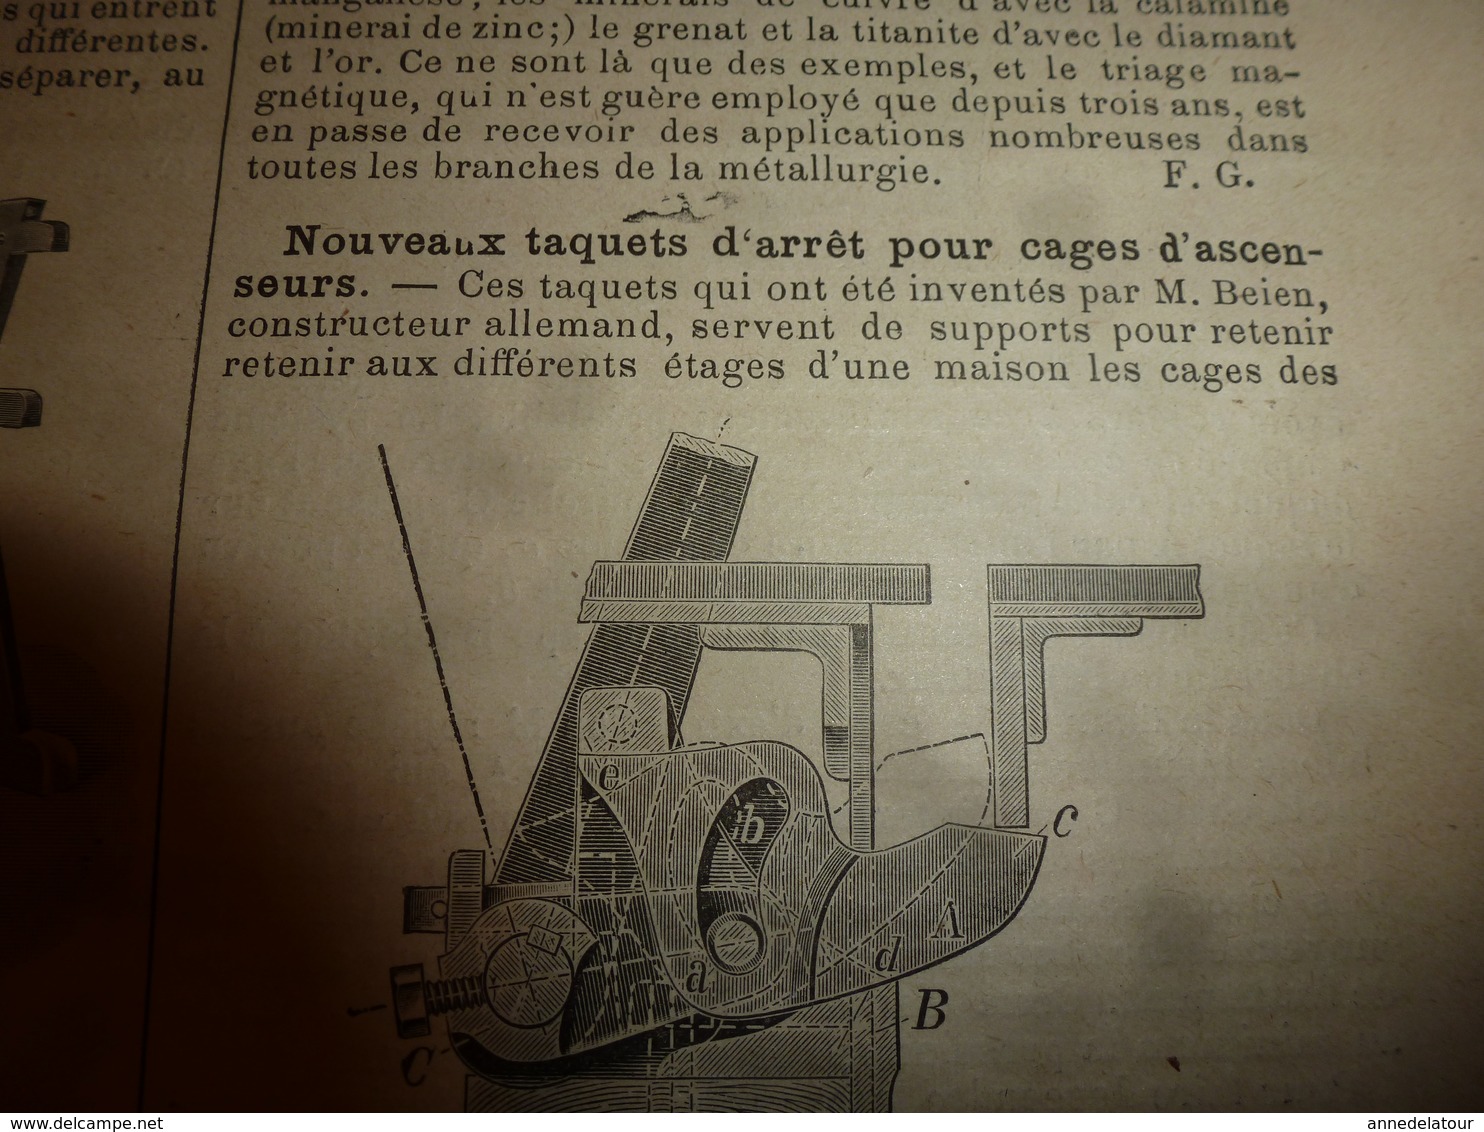 1903 LES INVENTIONS ILLUSTRÉES:Cuirassé SUFFREN;Volière-aquarium;Sécu-ascenseur;Photo-calcographie;Tirelire Secrète;etc - Sciences